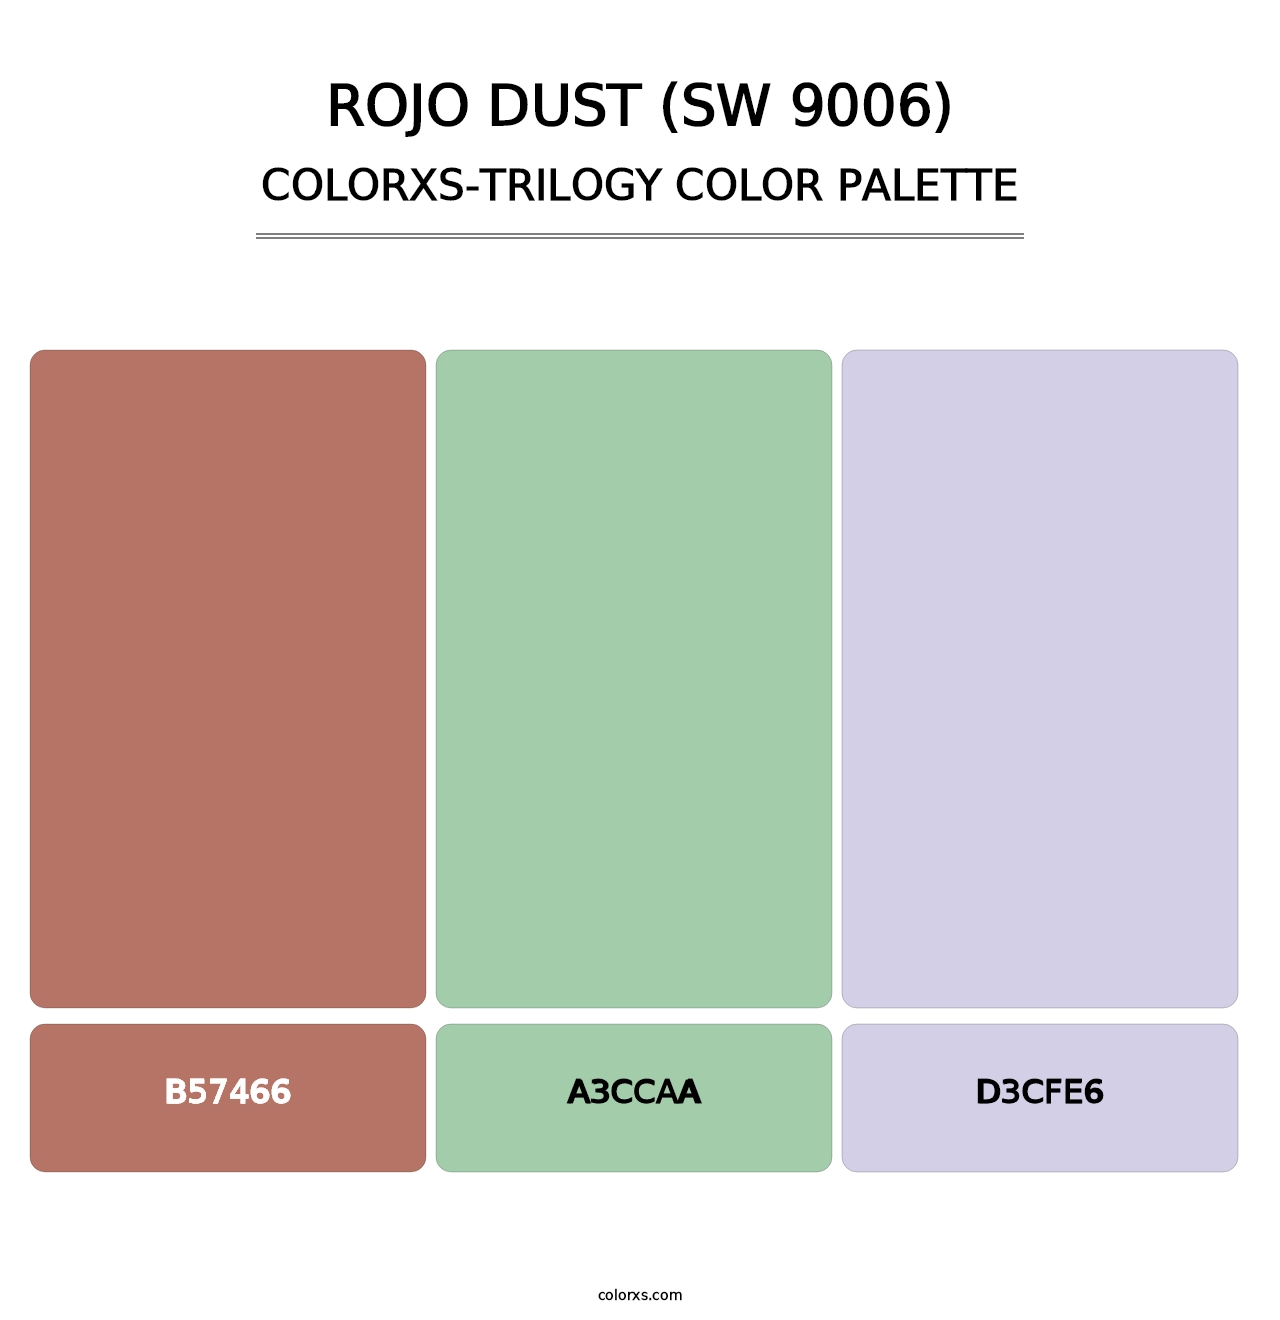 Rojo Dust (SW 9006) - Colorxs Trilogy Palette